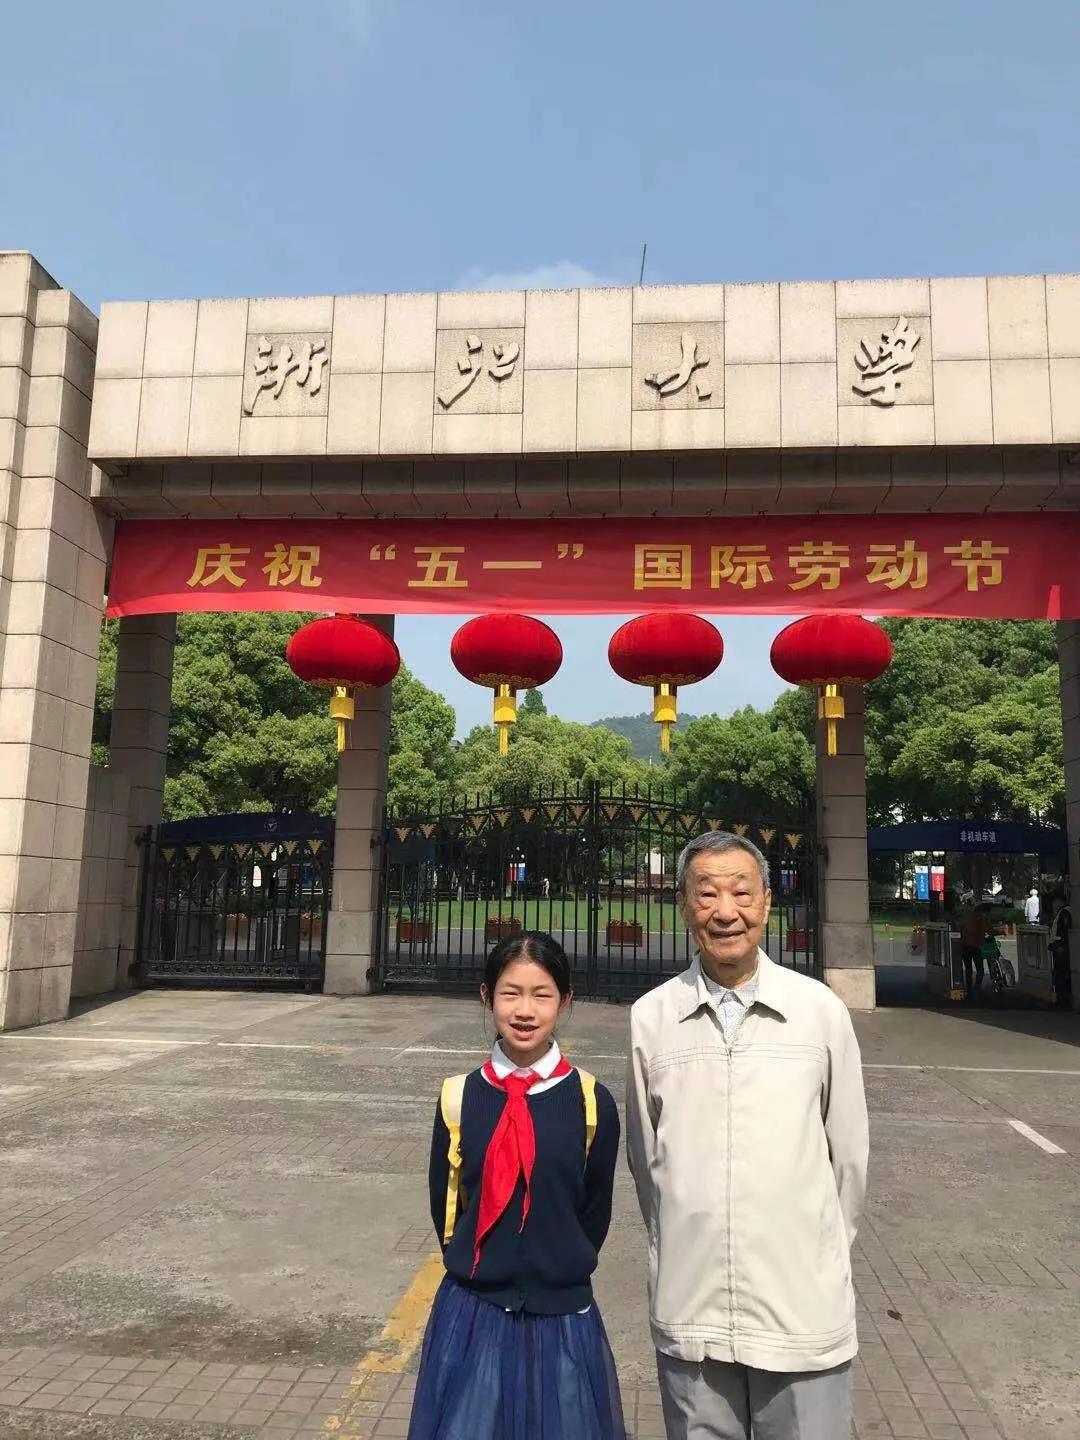 寻找党员故事，传承榜样精神 杭州市政苑小学一直在行动